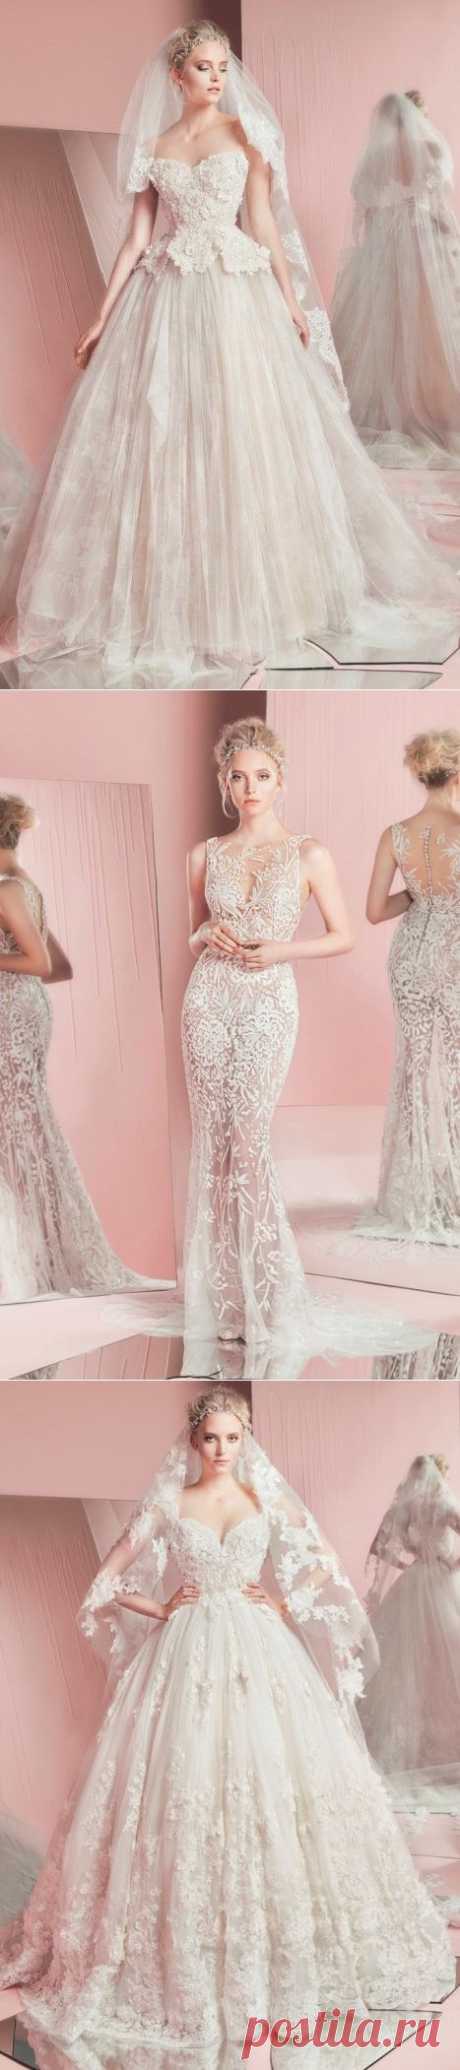 Потрясаающе красивые коллекции свадебных платьев Зухаира Мурада. | ВЗГЛЯНИ НА МИР С ИНТЕРЕСОМ